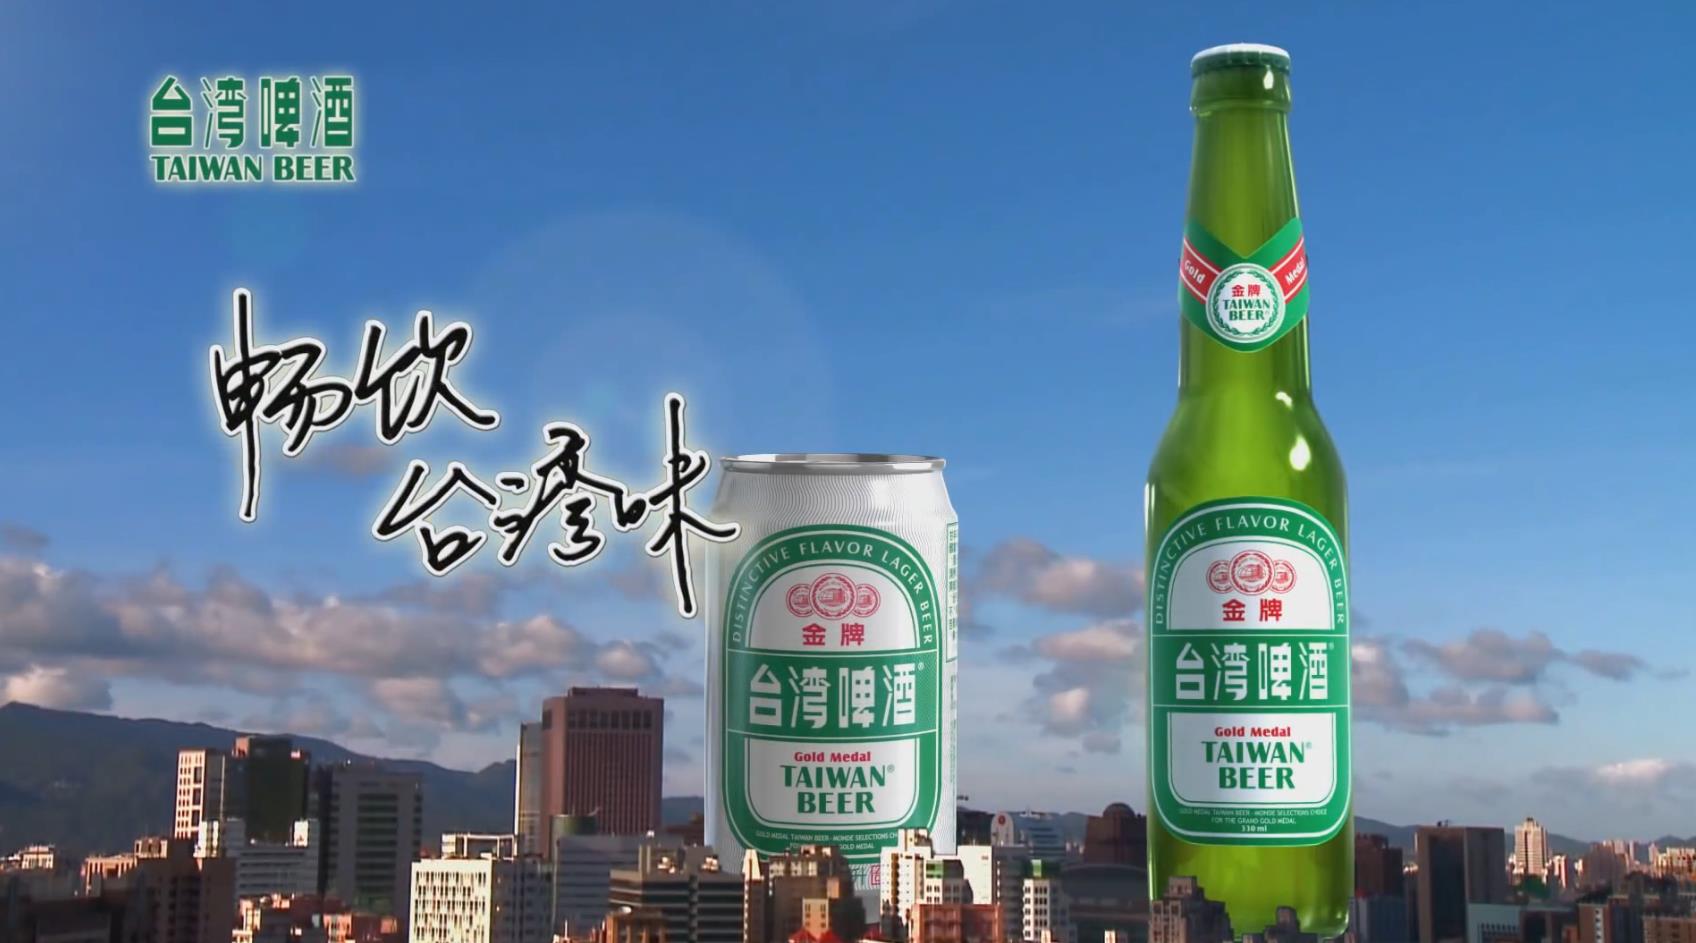 FIR 台湾啤酒内地代言人 广告